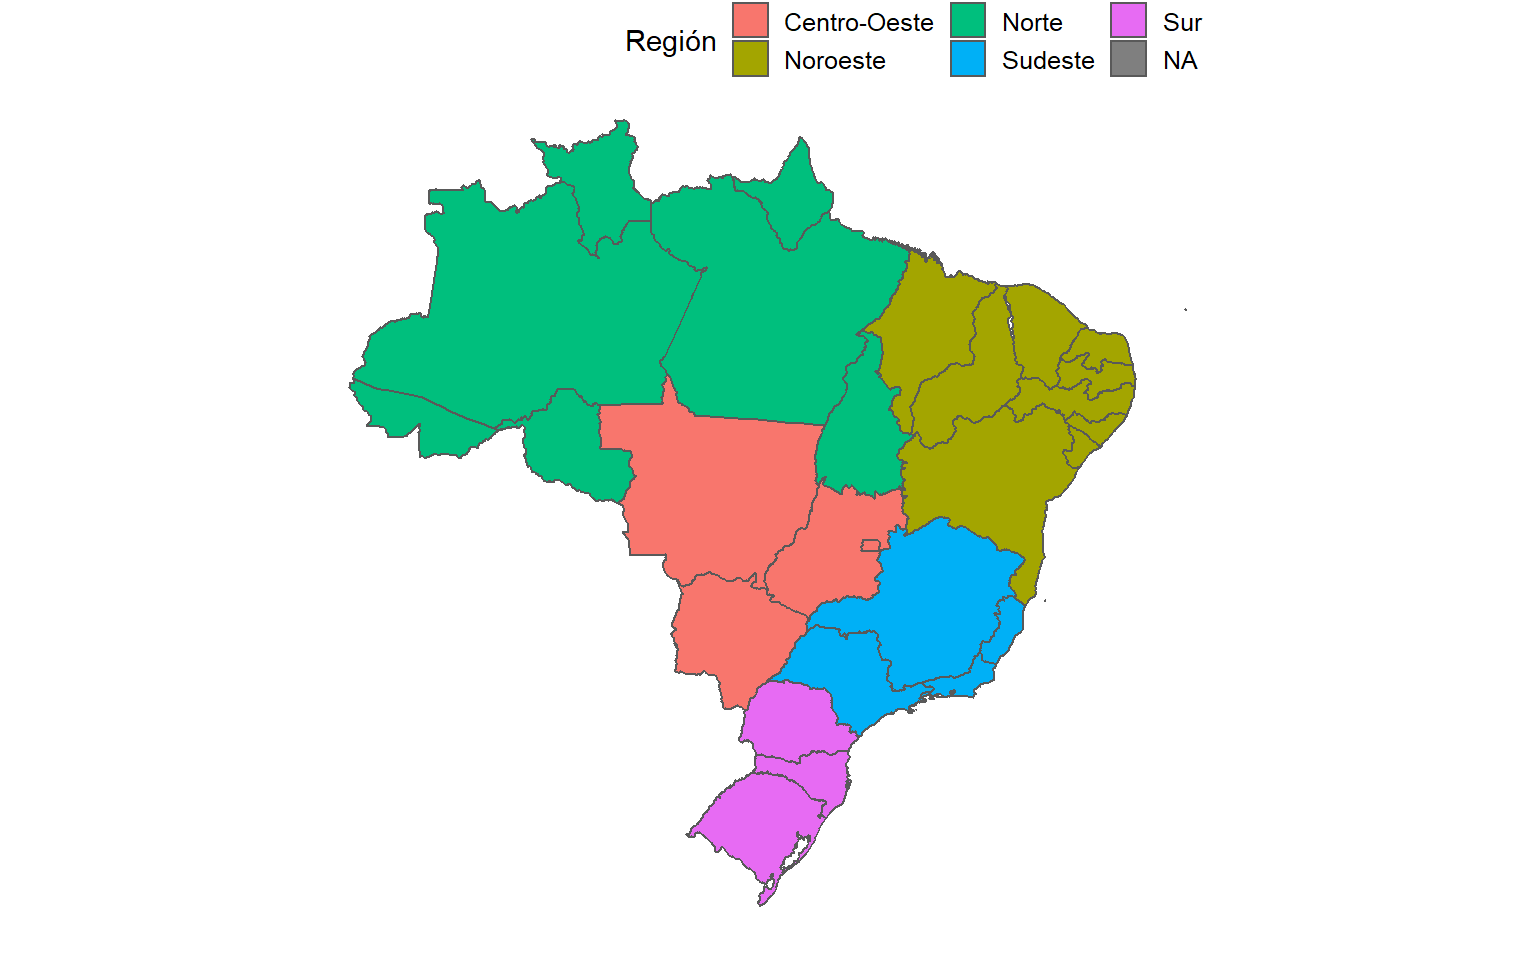  Mapa de los estados brasileños agrupados por región